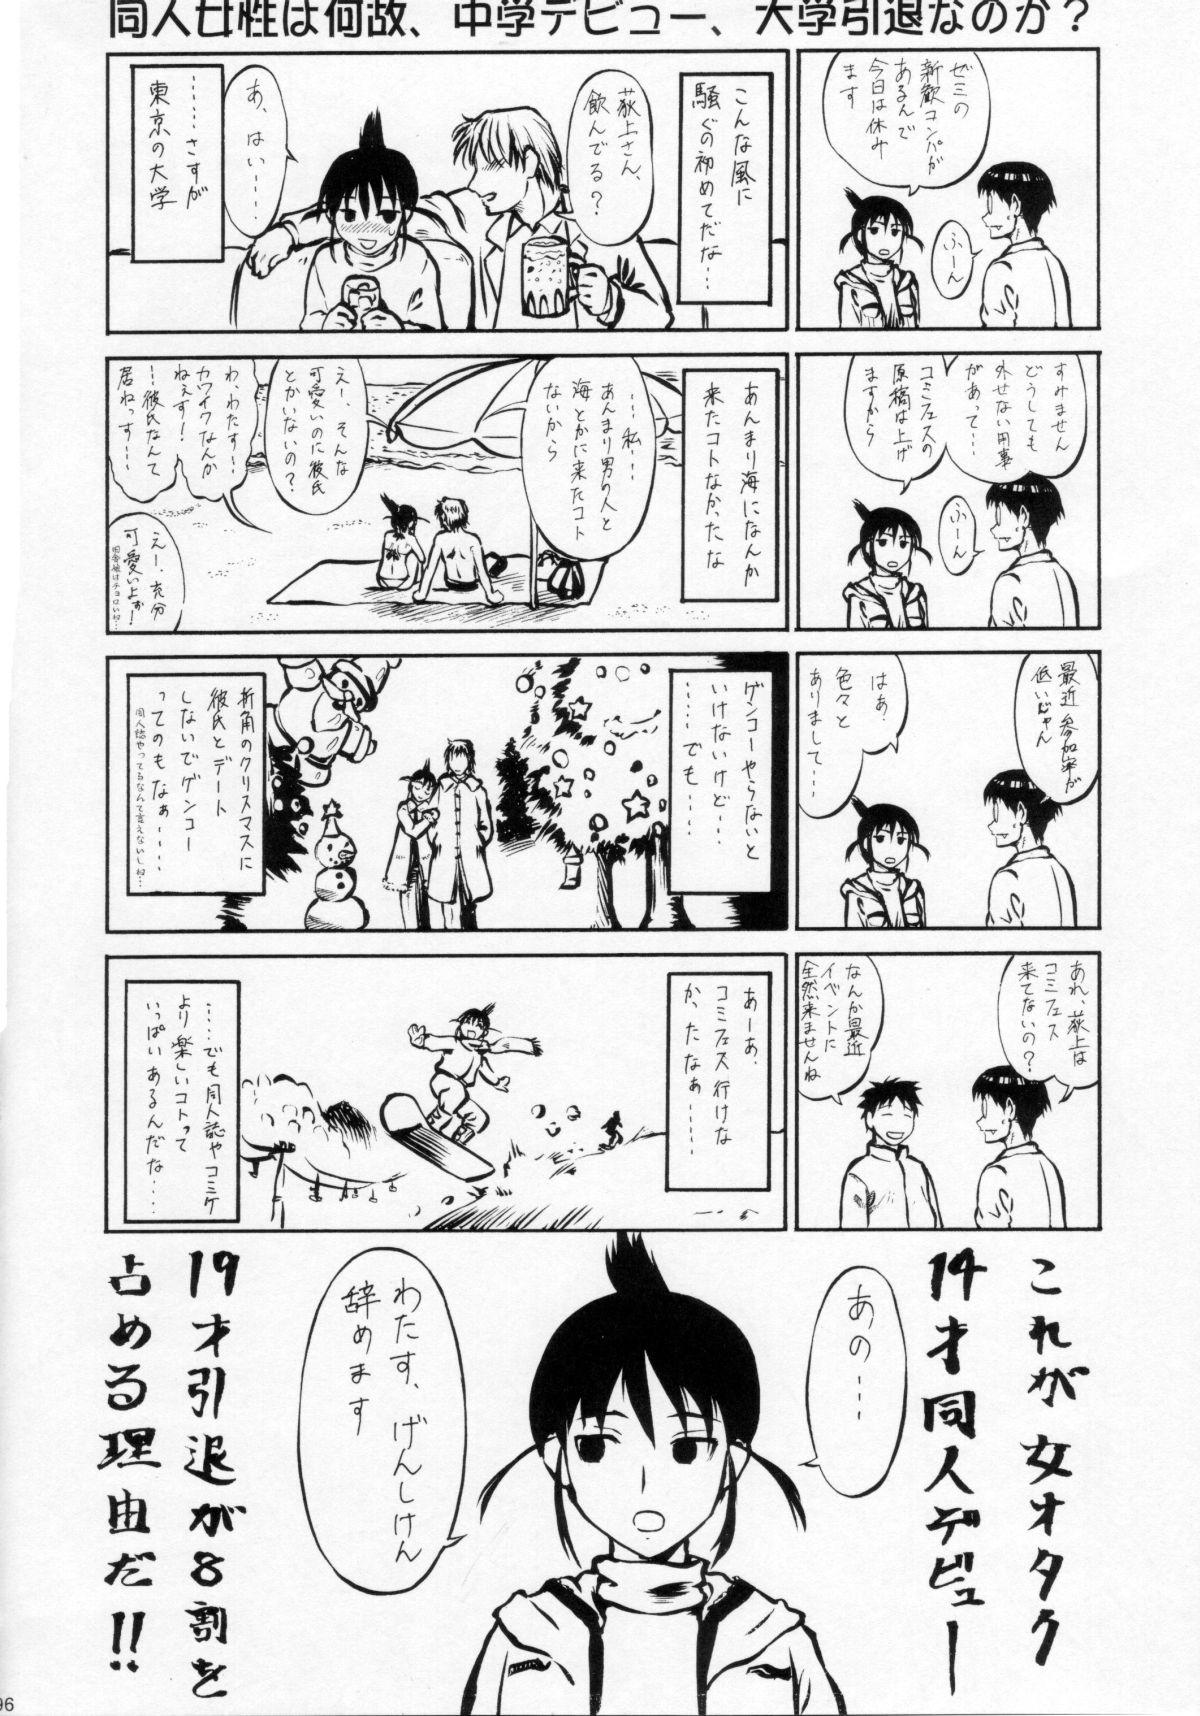 Umeta Manga Shuu 11 -nin iru! 94